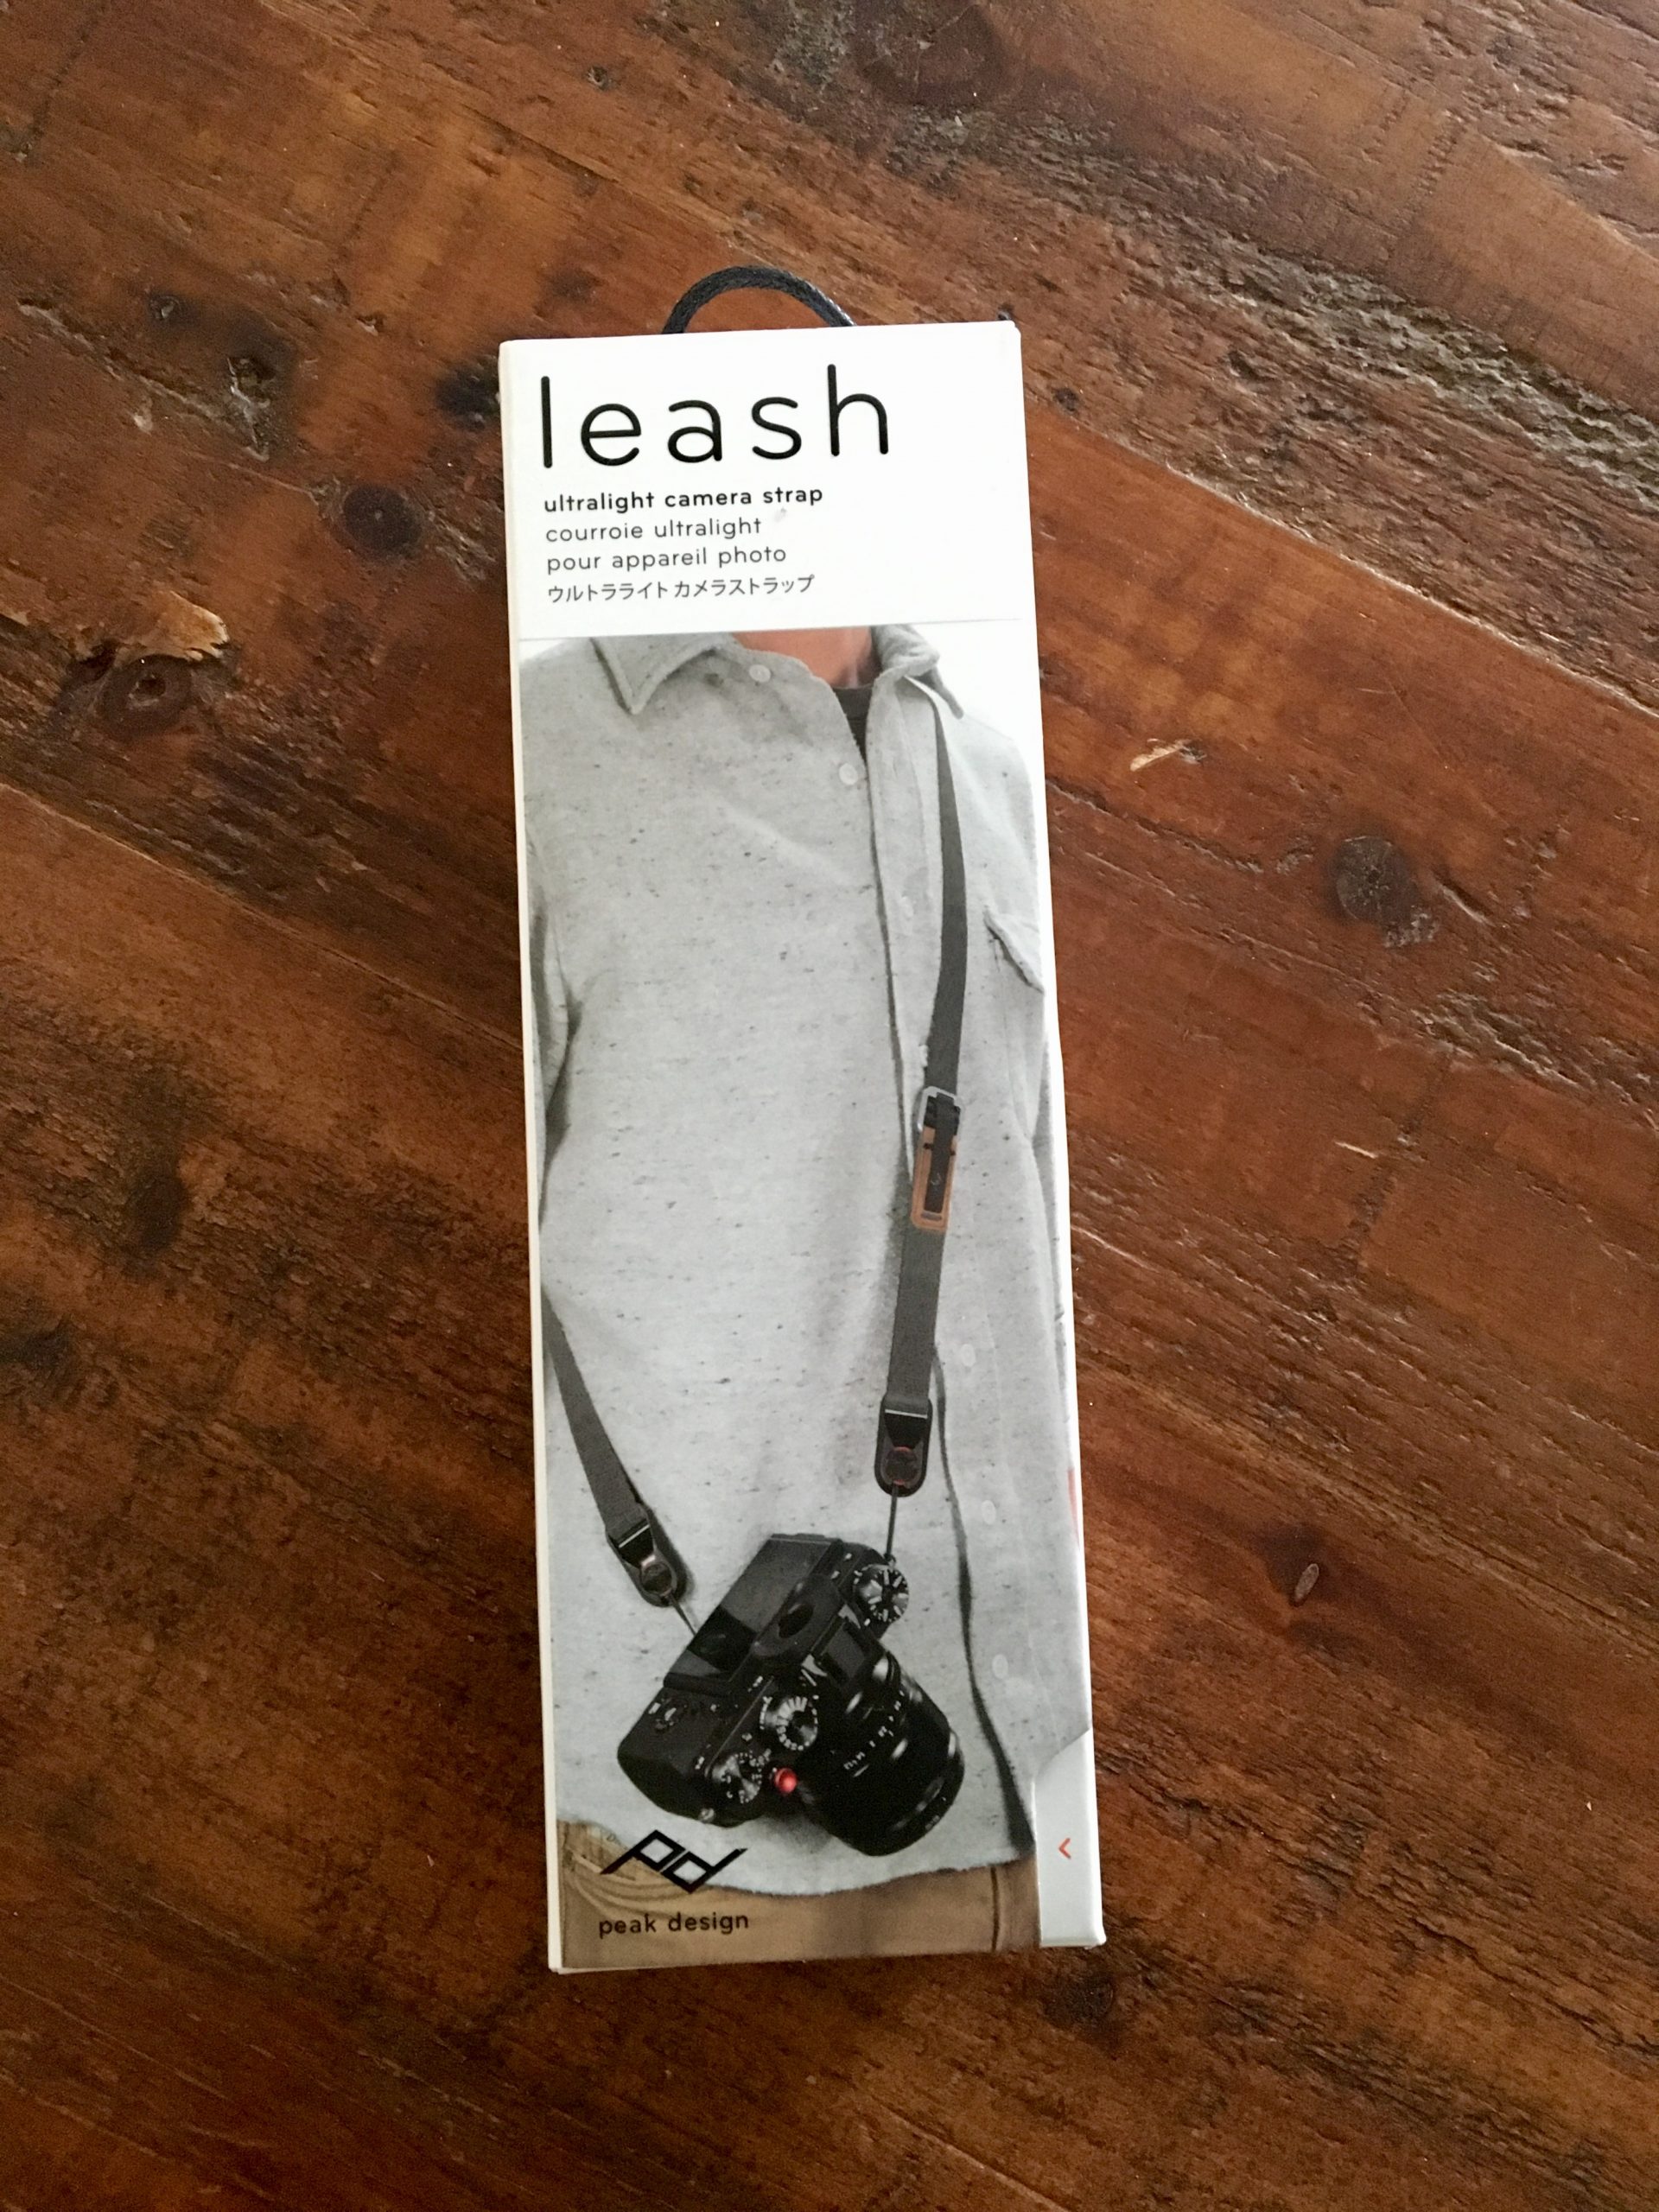 peak design leash